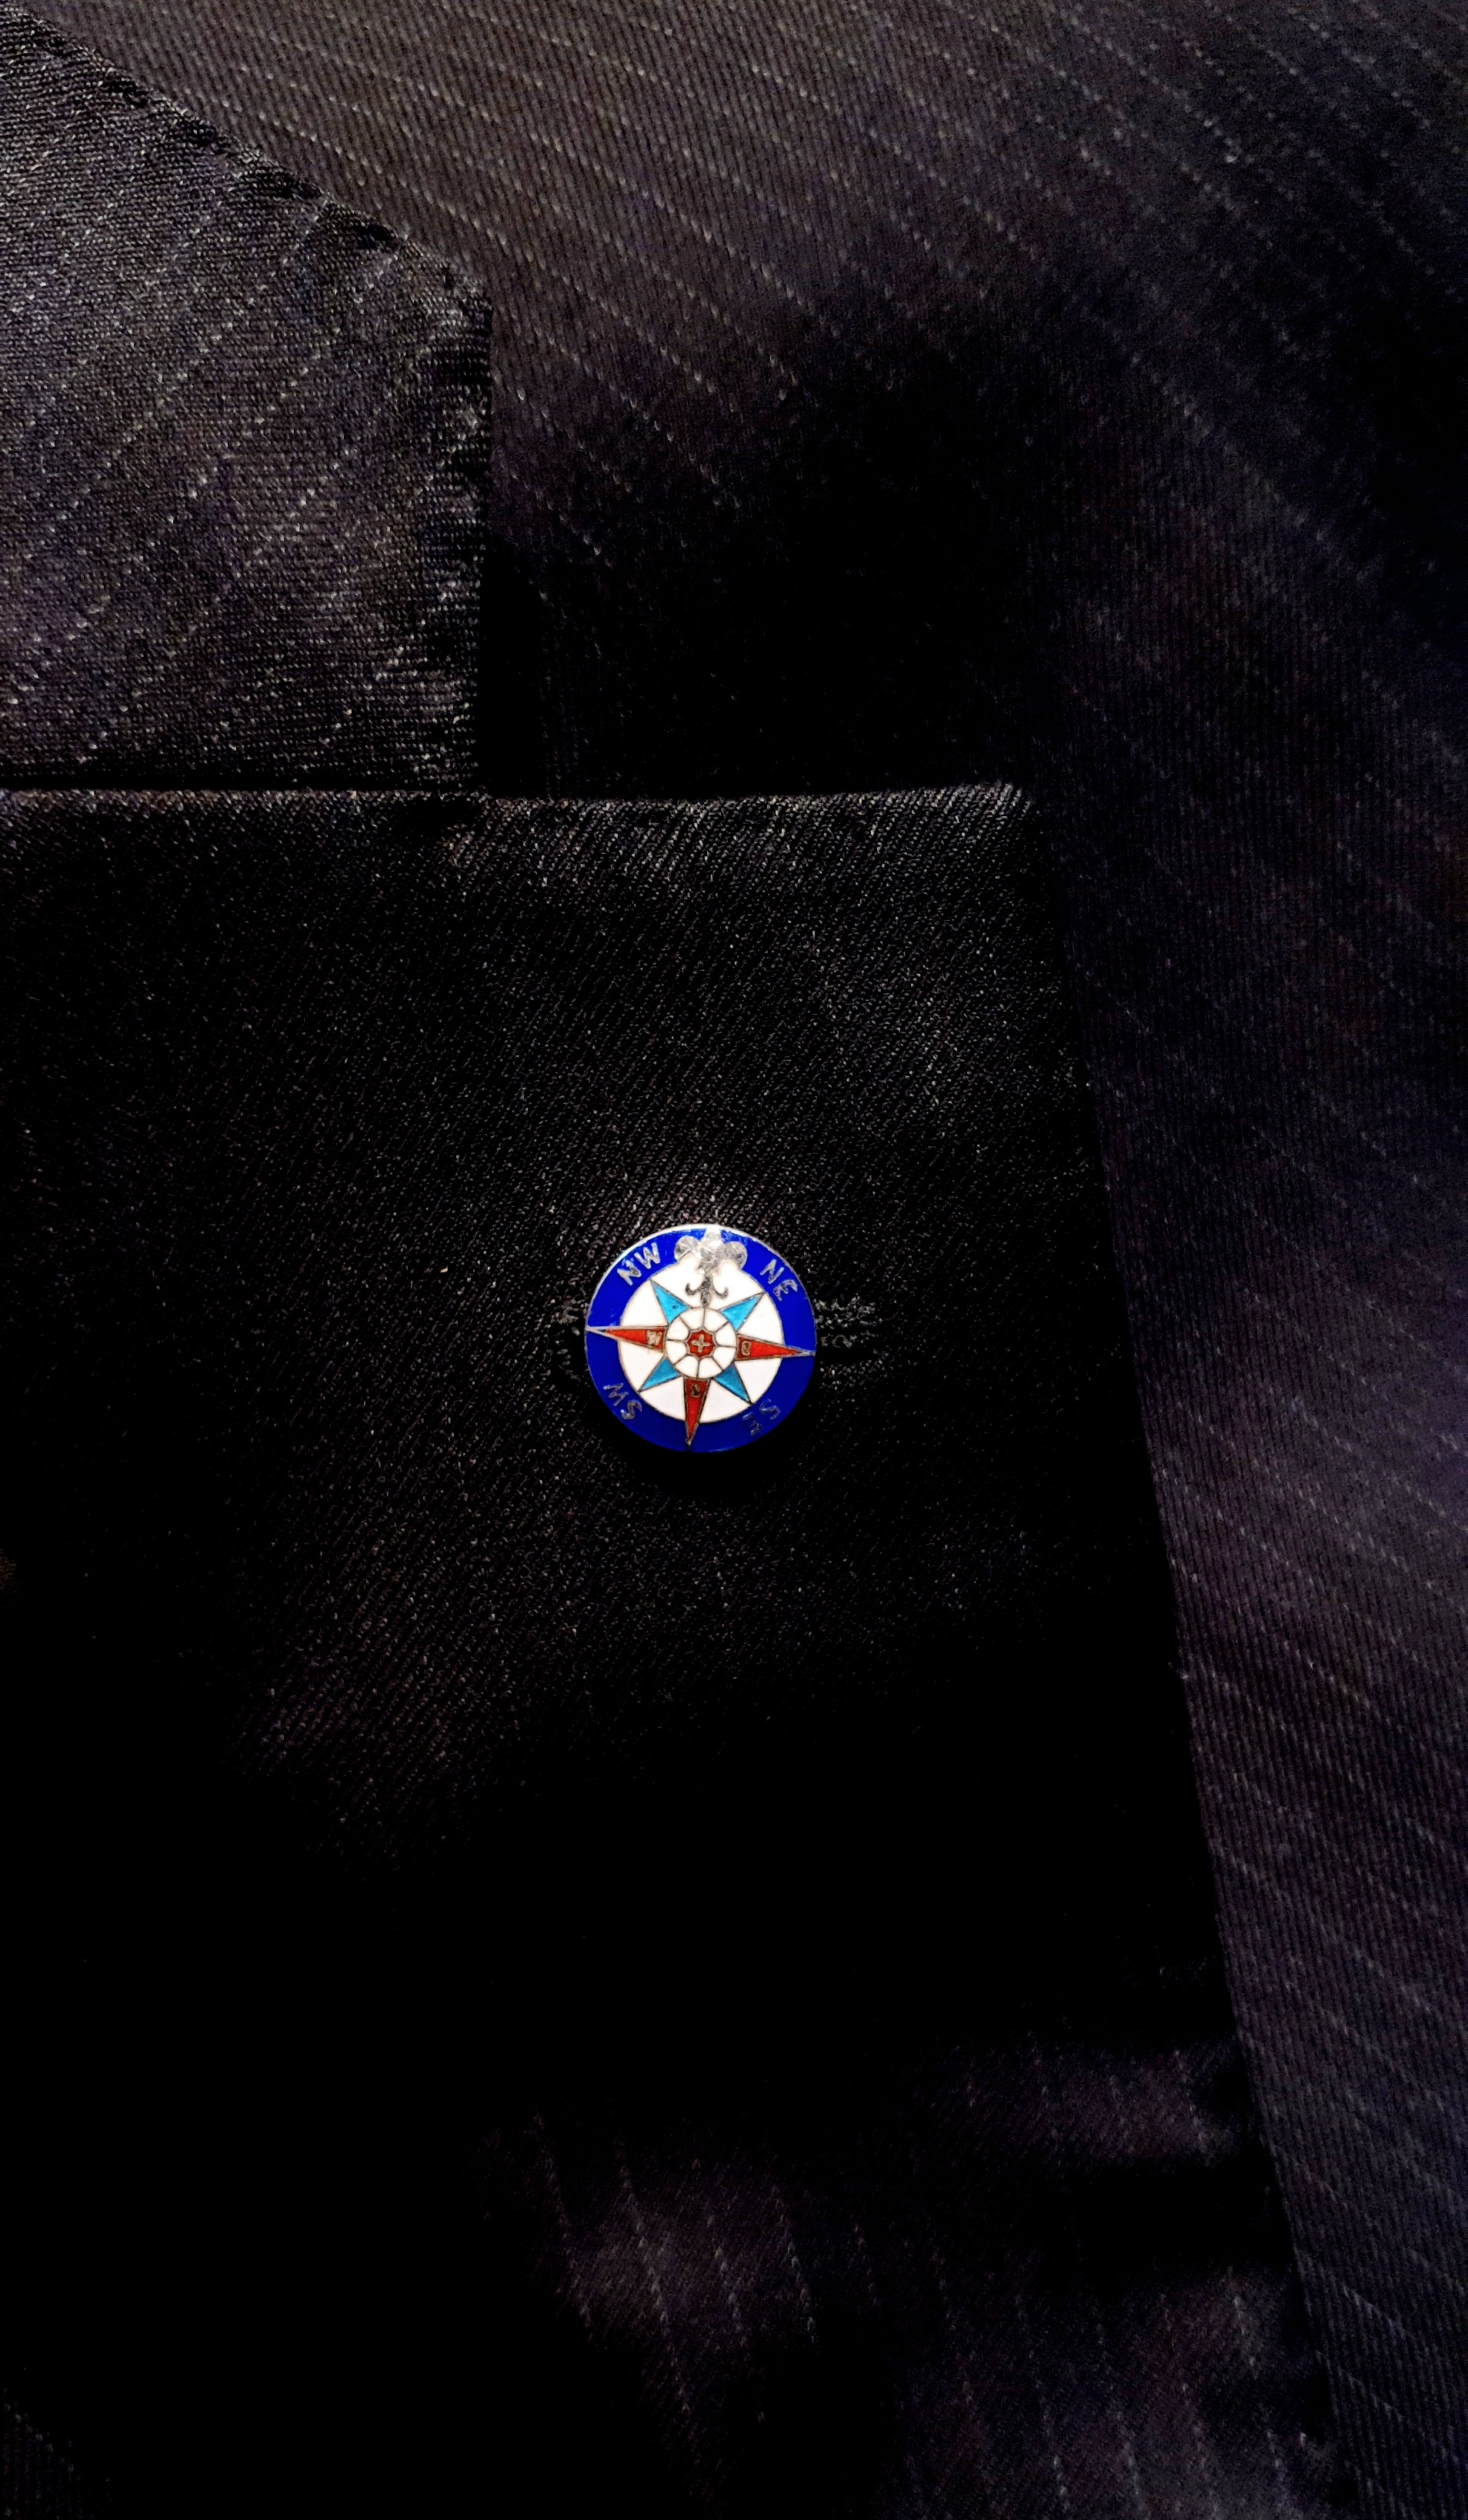 Spille Pins da giacca personalizzati - Gioielli venezia